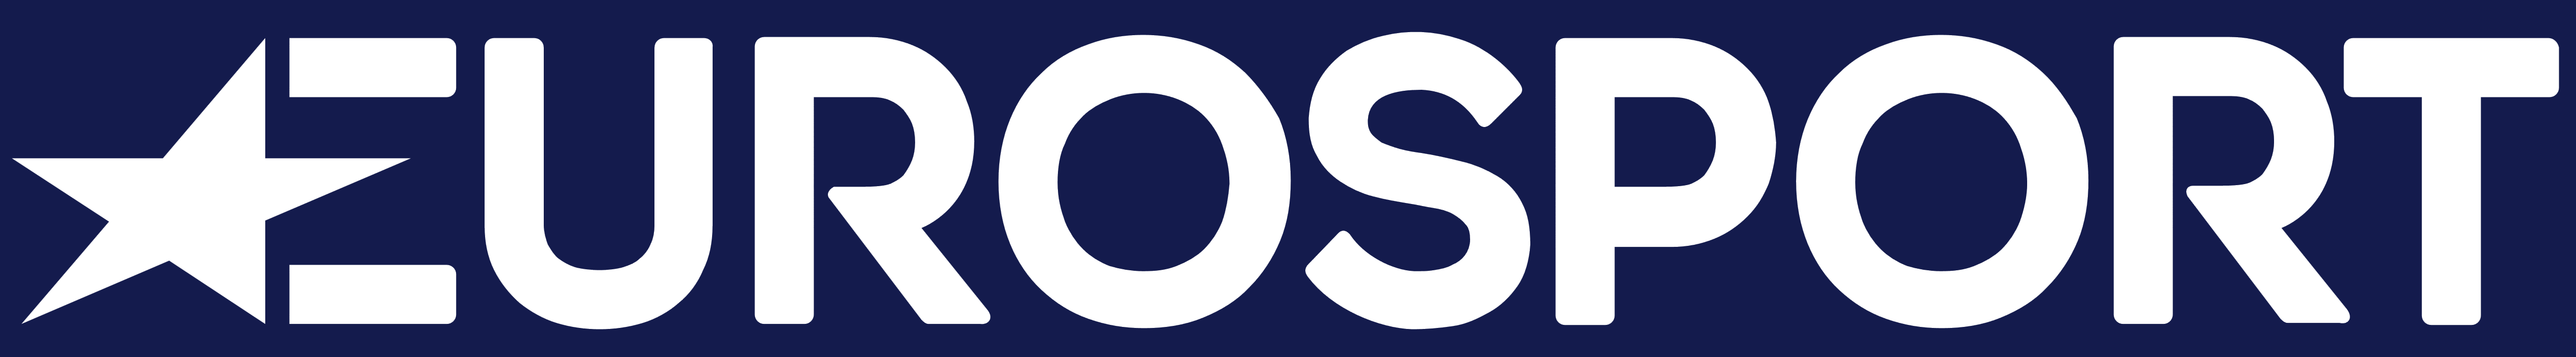 Eurosport – Logos Download
